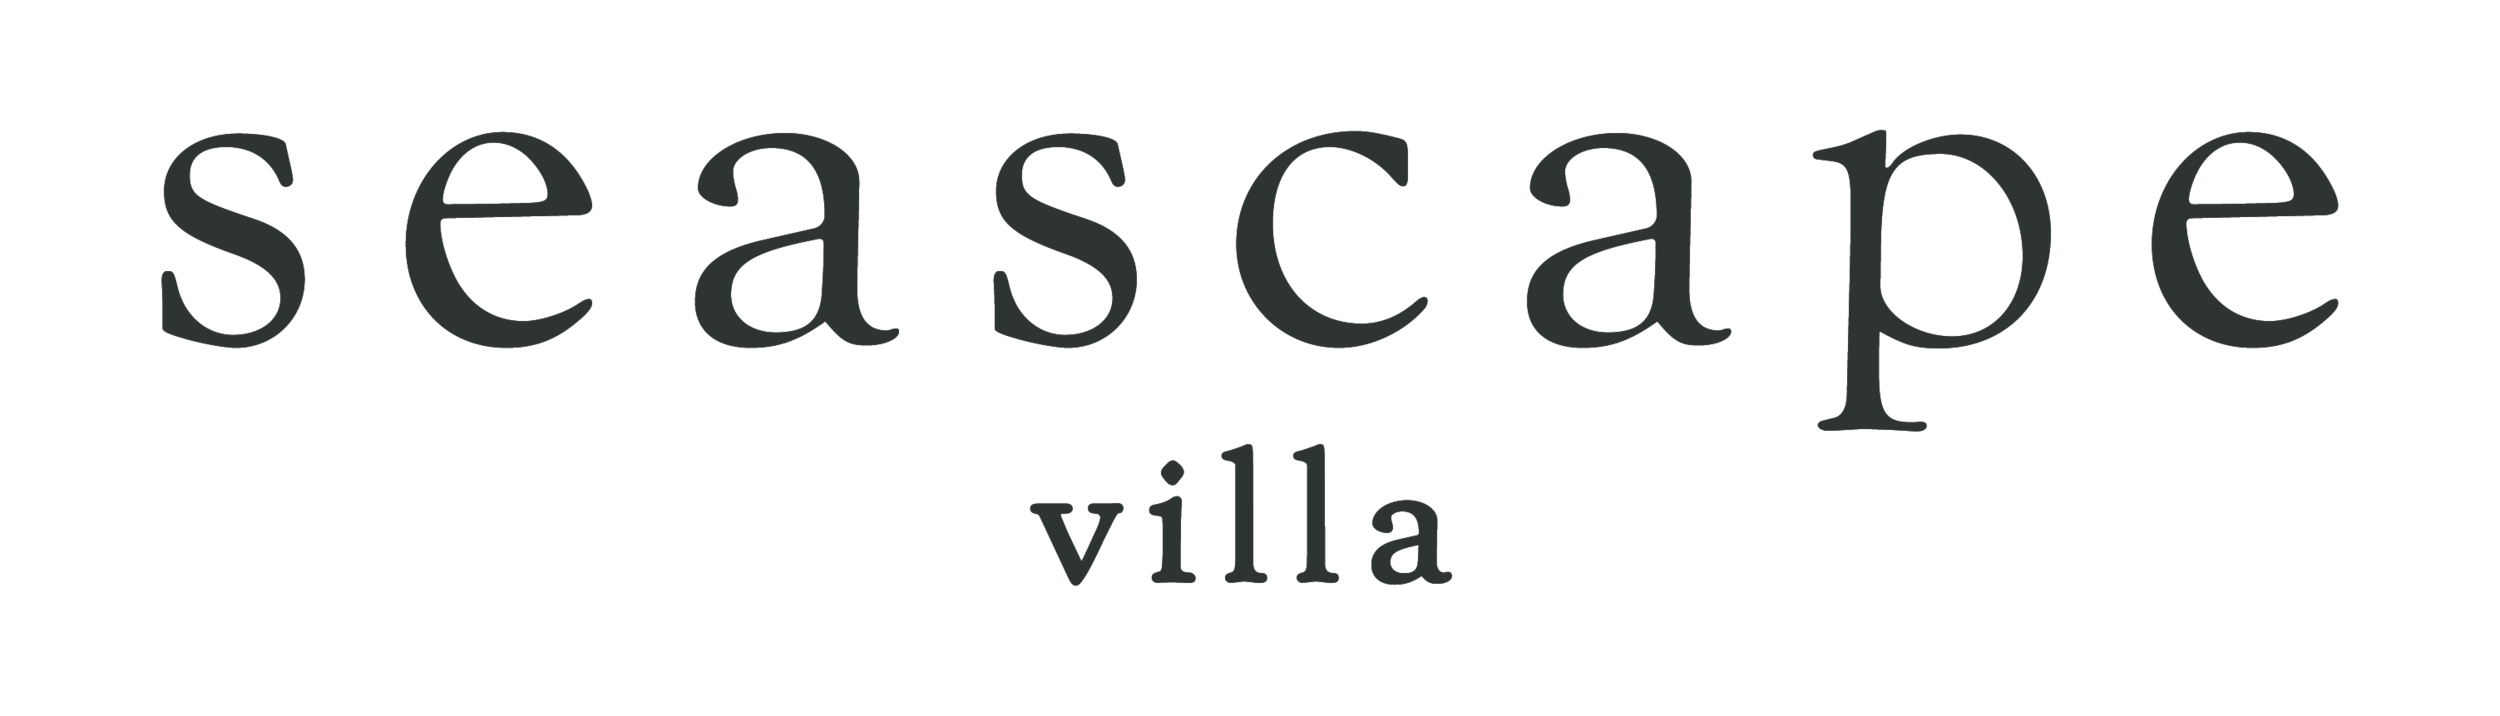 Seascape_Villa_Logo_Final_Mono.png